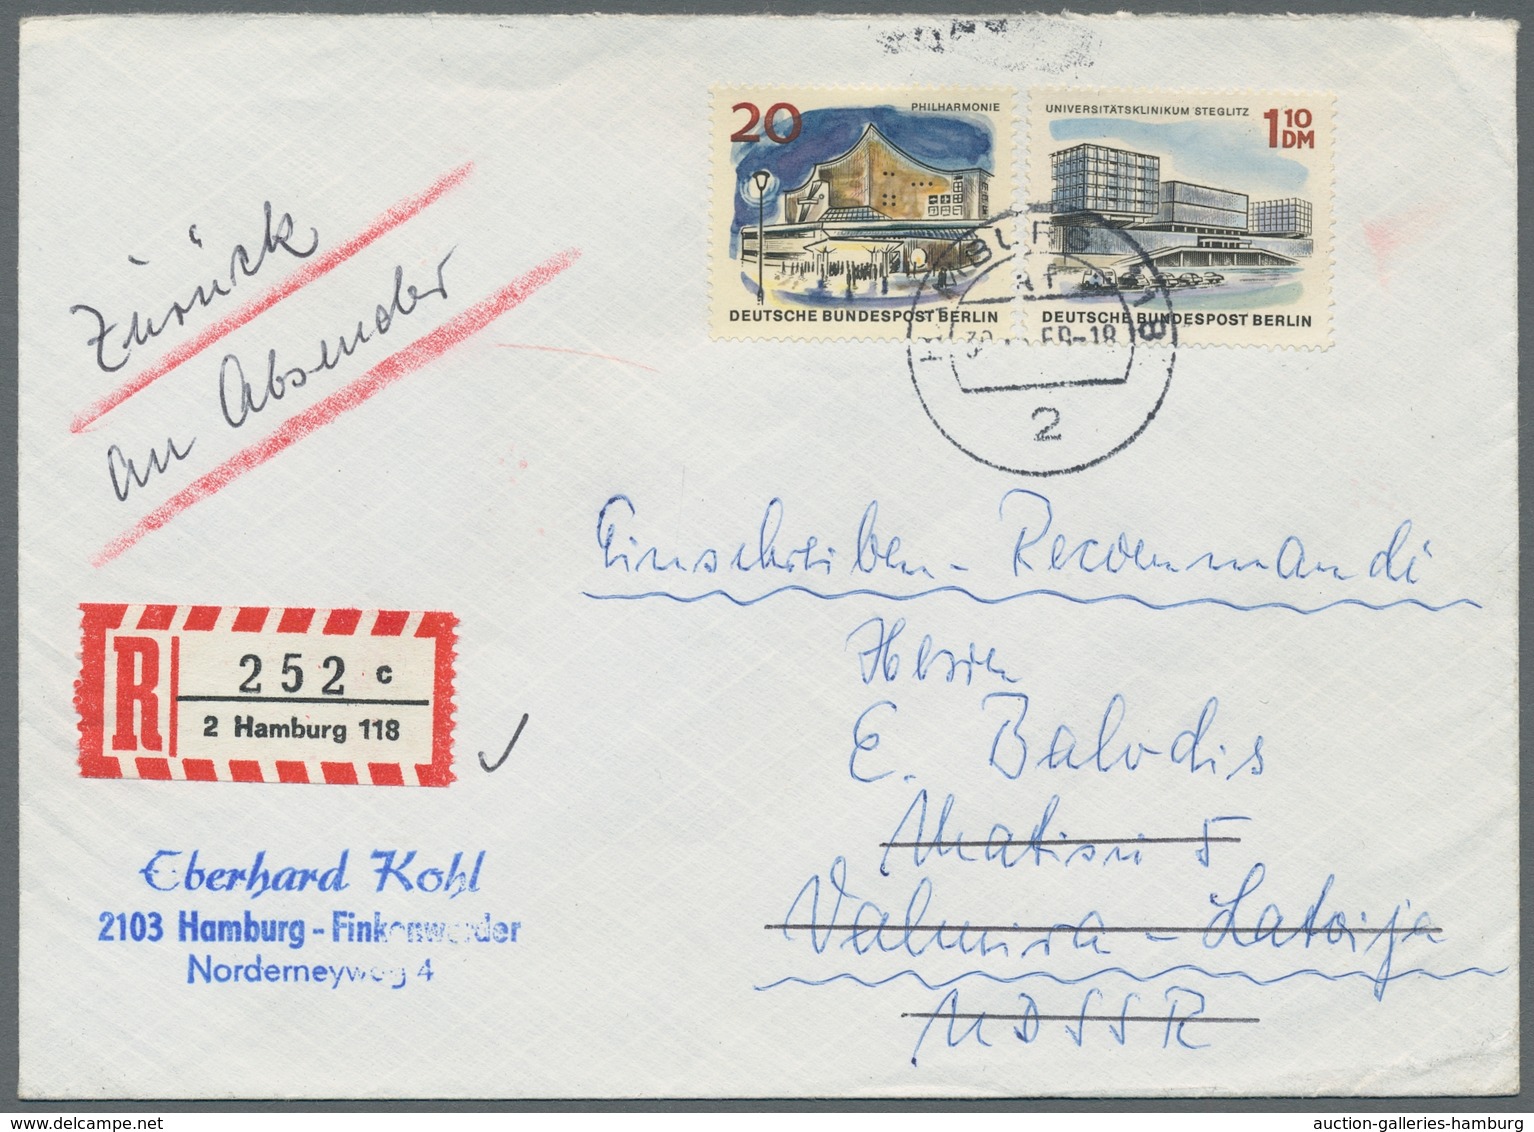 Bundesrepublik und Berlin - Postkrieg: 1951-1971, Postkrieg Partie von 25 Briefen und Postkarten mit